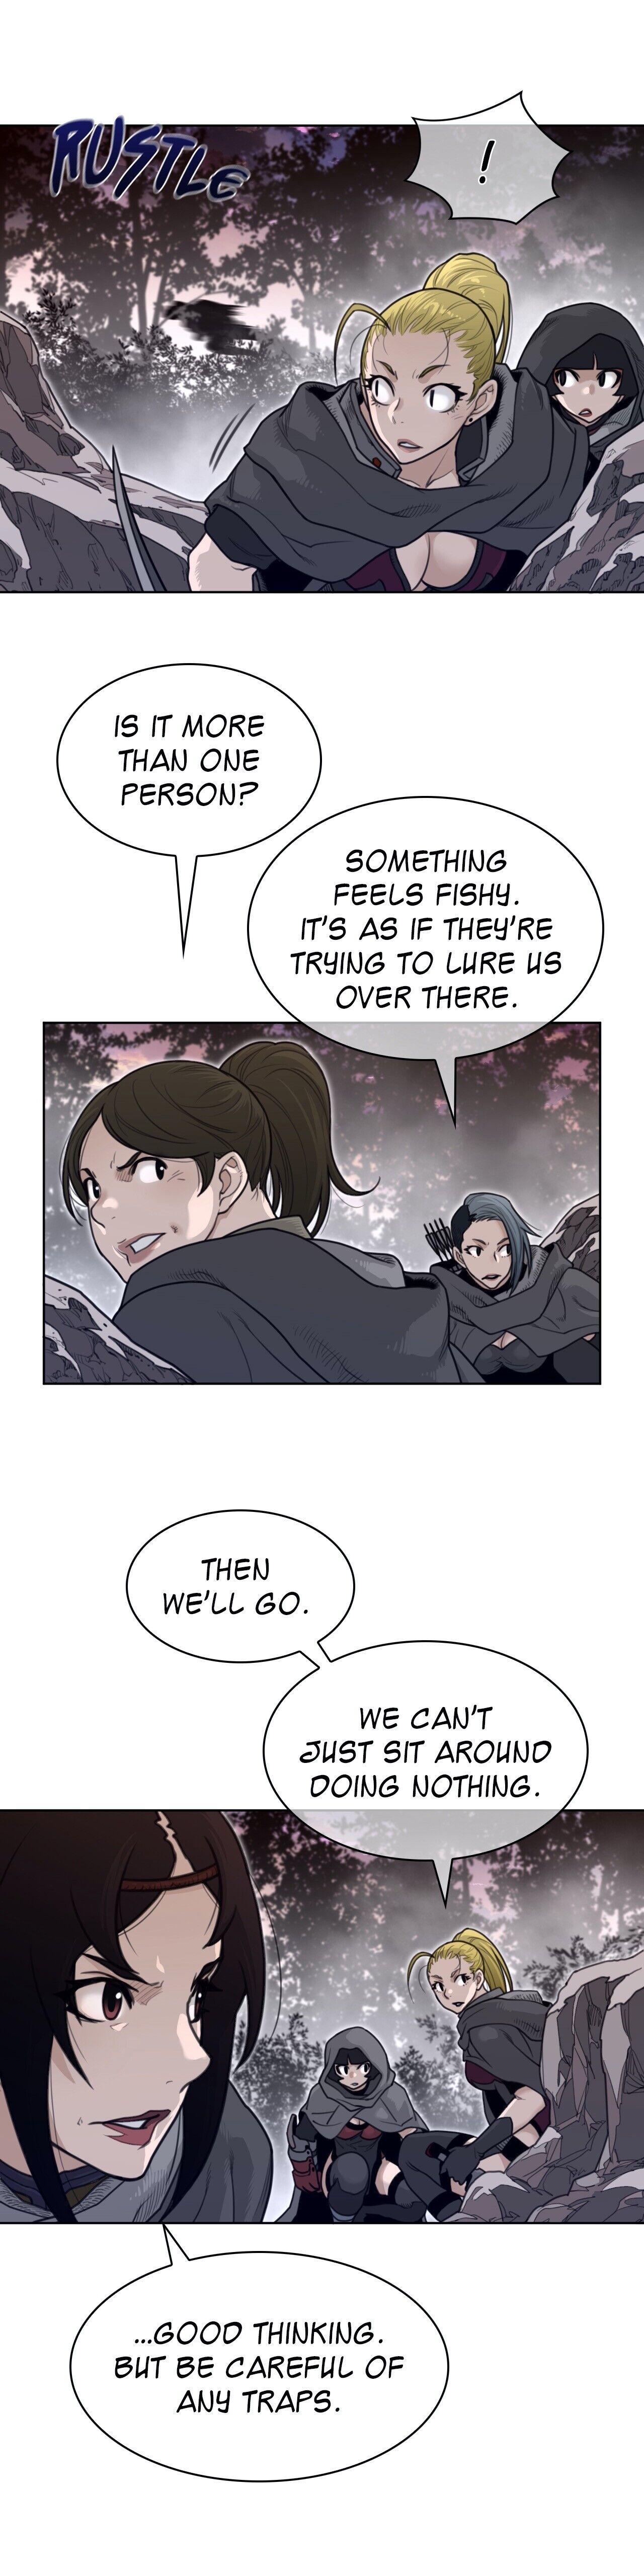 Perfect Half Chapter 135 : Another Reunion (Season 2 Finale) page 11 - Mangakakalot